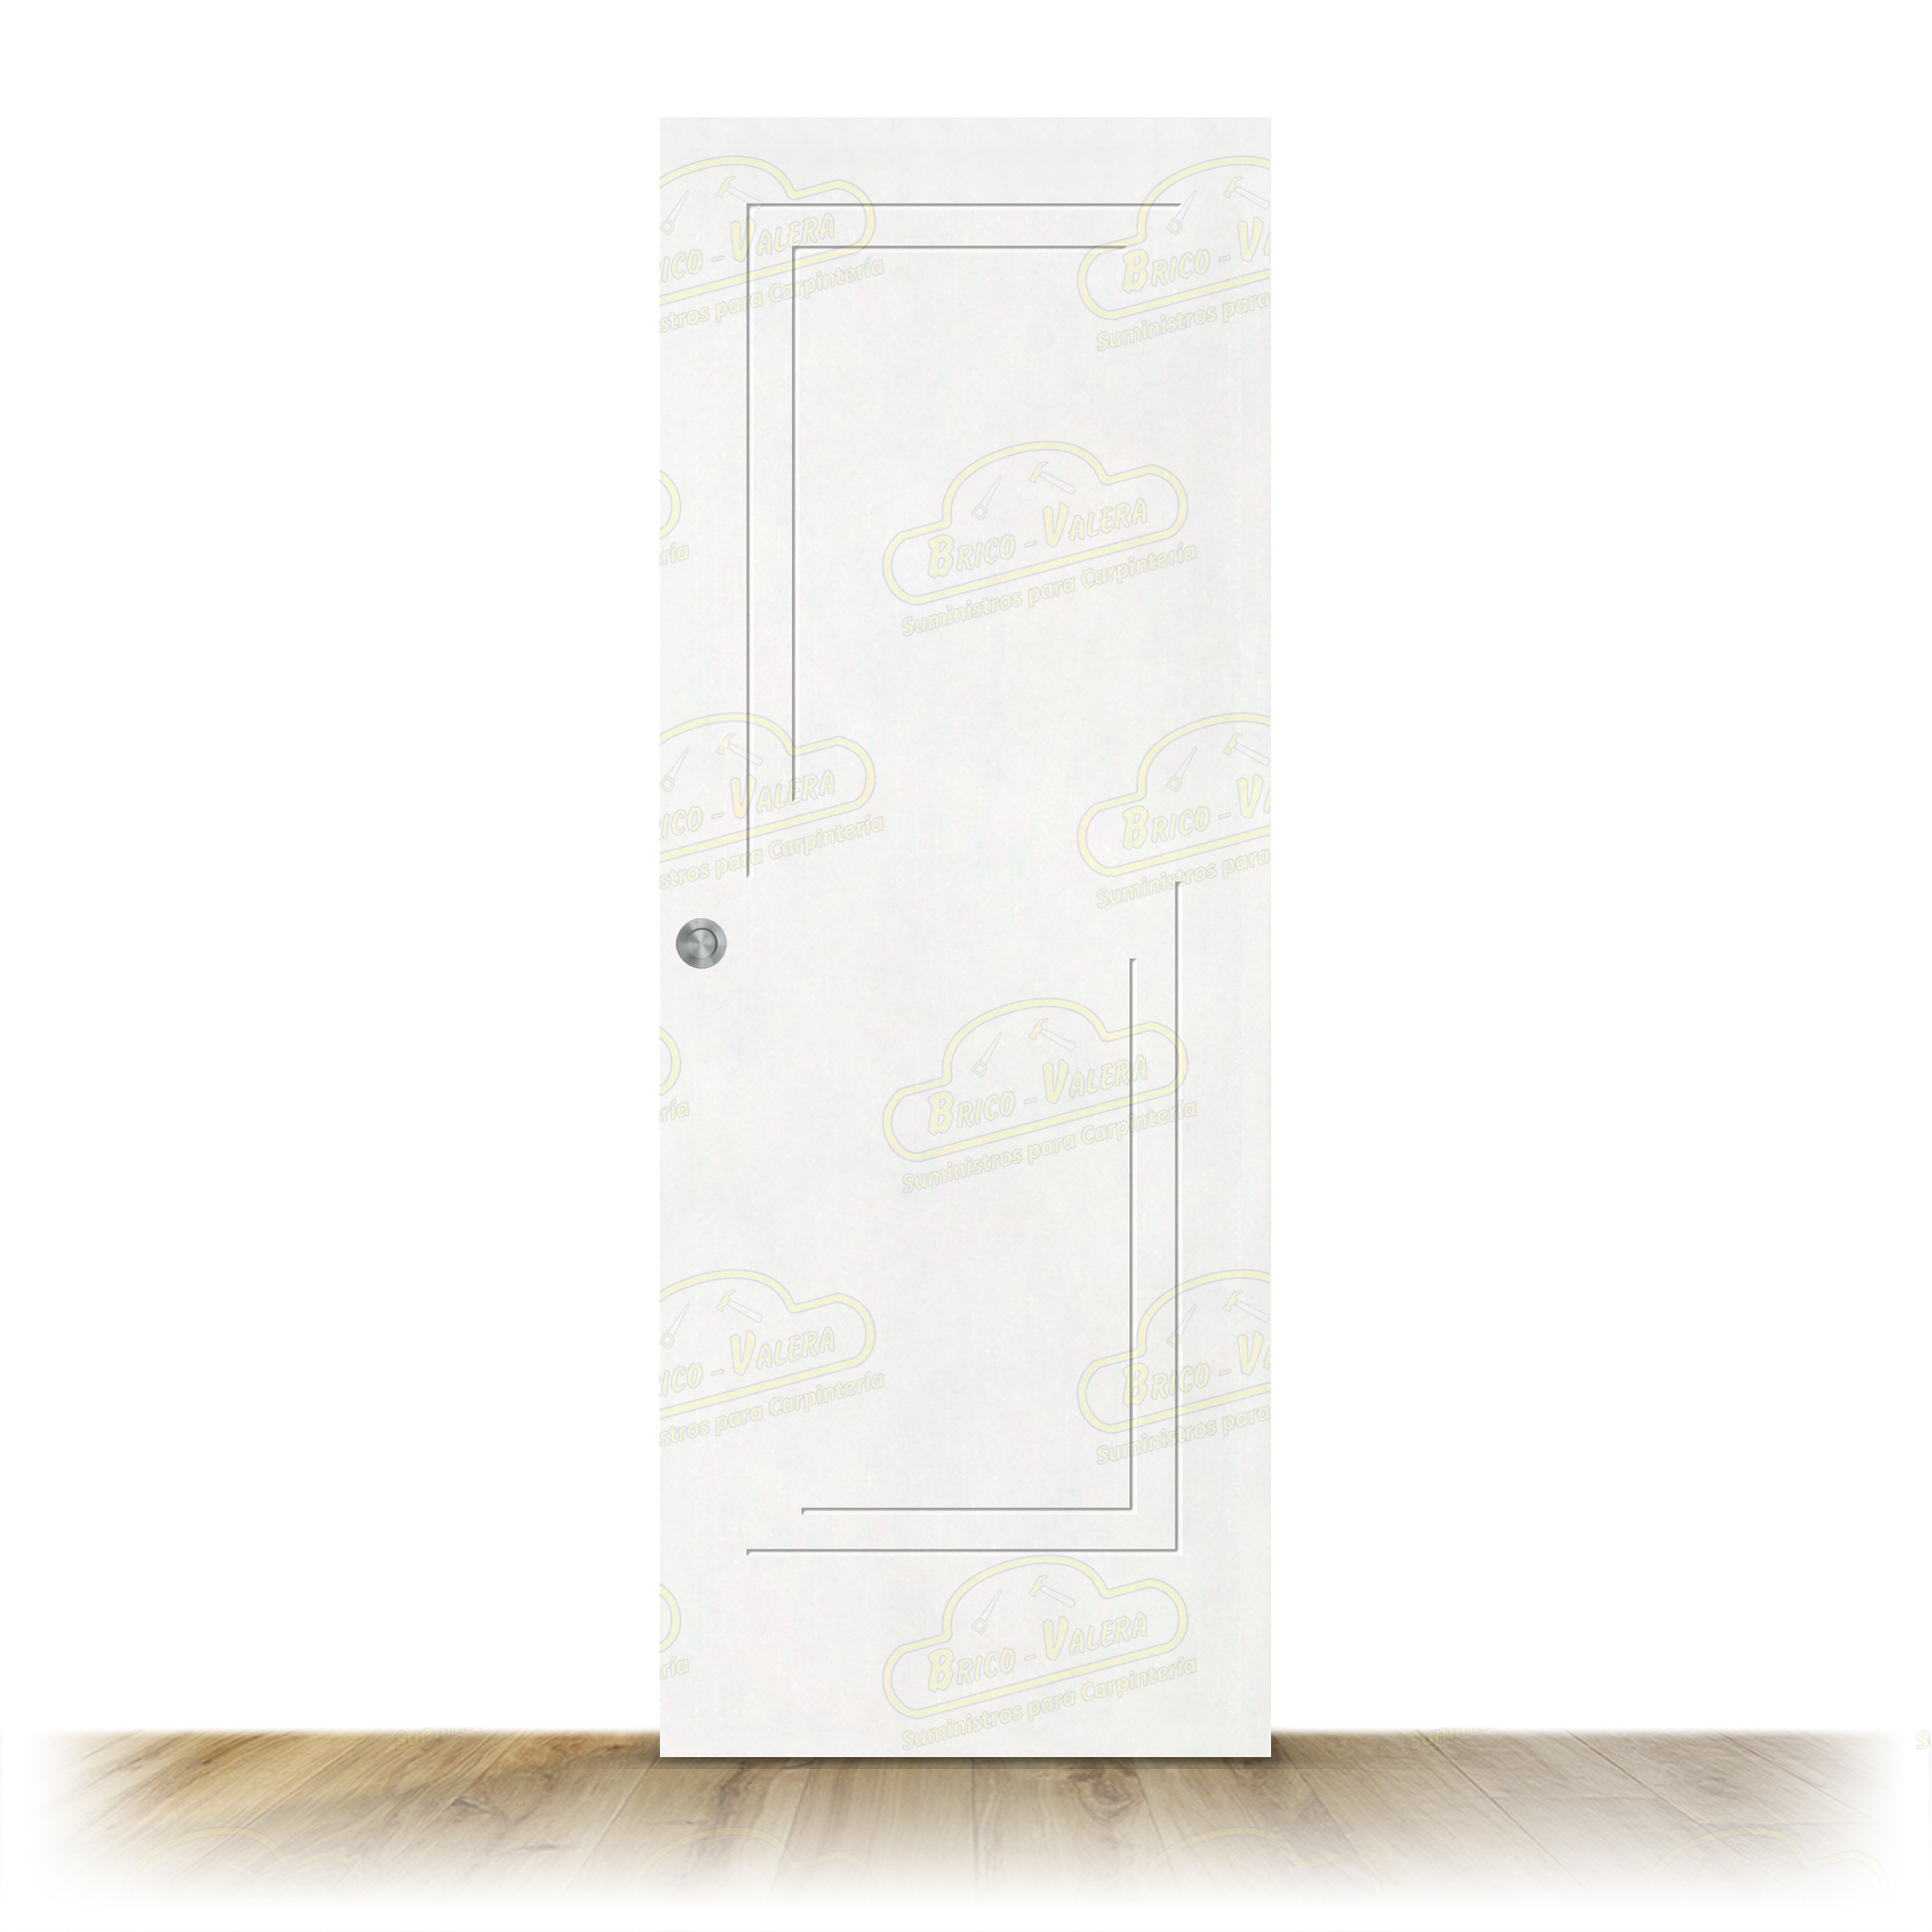 Puerta PL-1400 Lacada Blanca Corredera de Interior (Maciza)